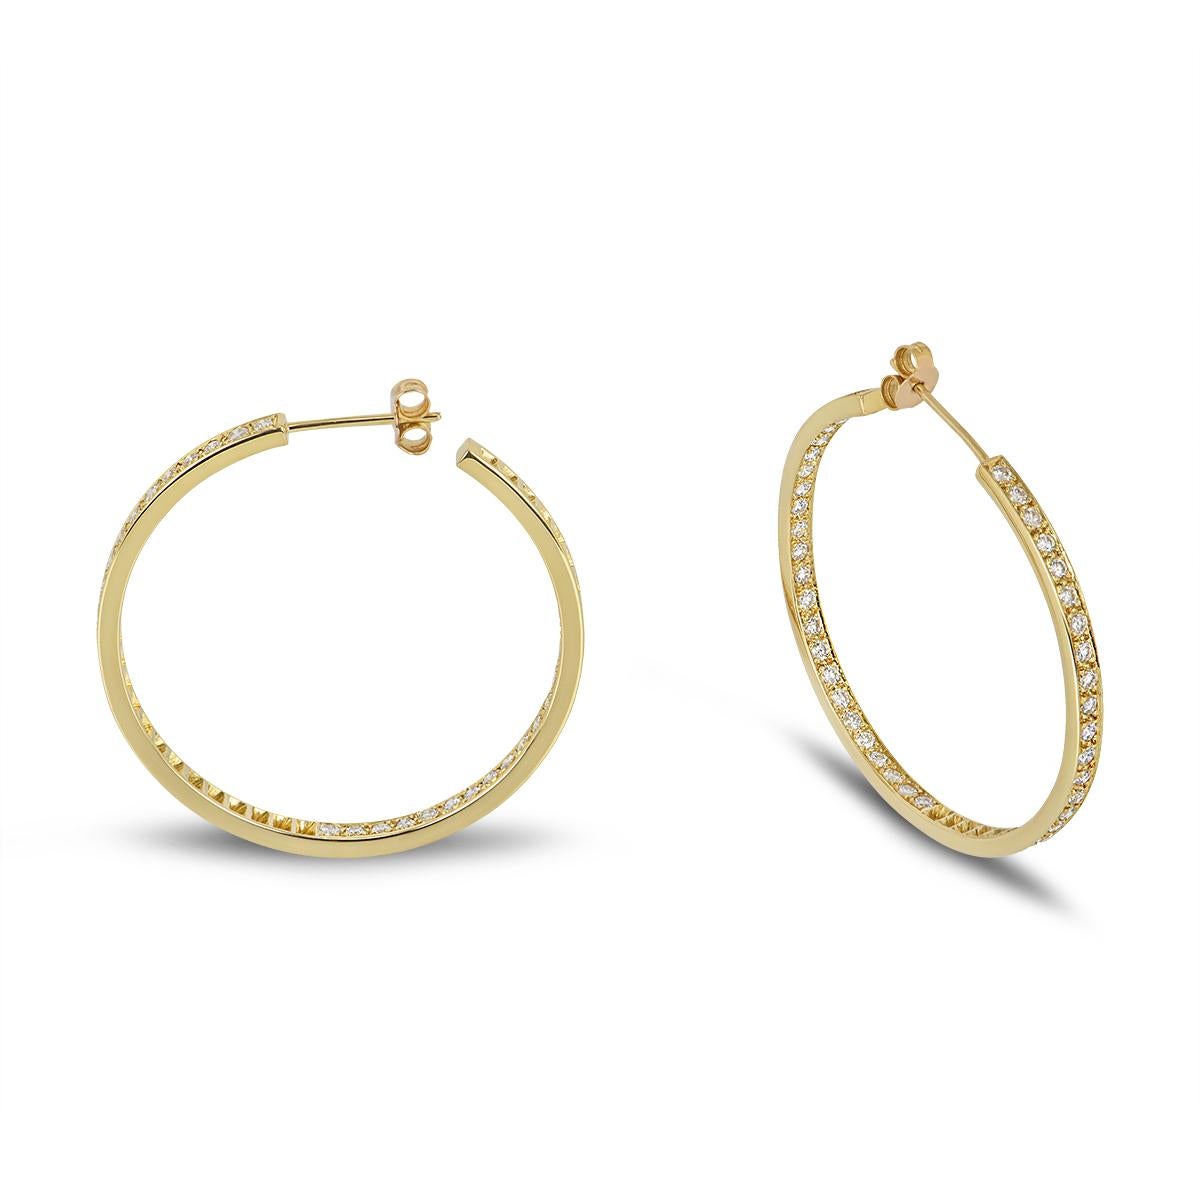 Ein wunderschönes Paar Diamant-Ring-Ohrringe aus 18 Karat Gelbgold. Die Ohrringe sind jeweils auf der Vorder- und Innenseite mit 47 runden Diamanten im Brillantschliff mit einem Gesamtgewicht von insgesamt 2,35 ct, Farbe H-I und Reinheit VS+